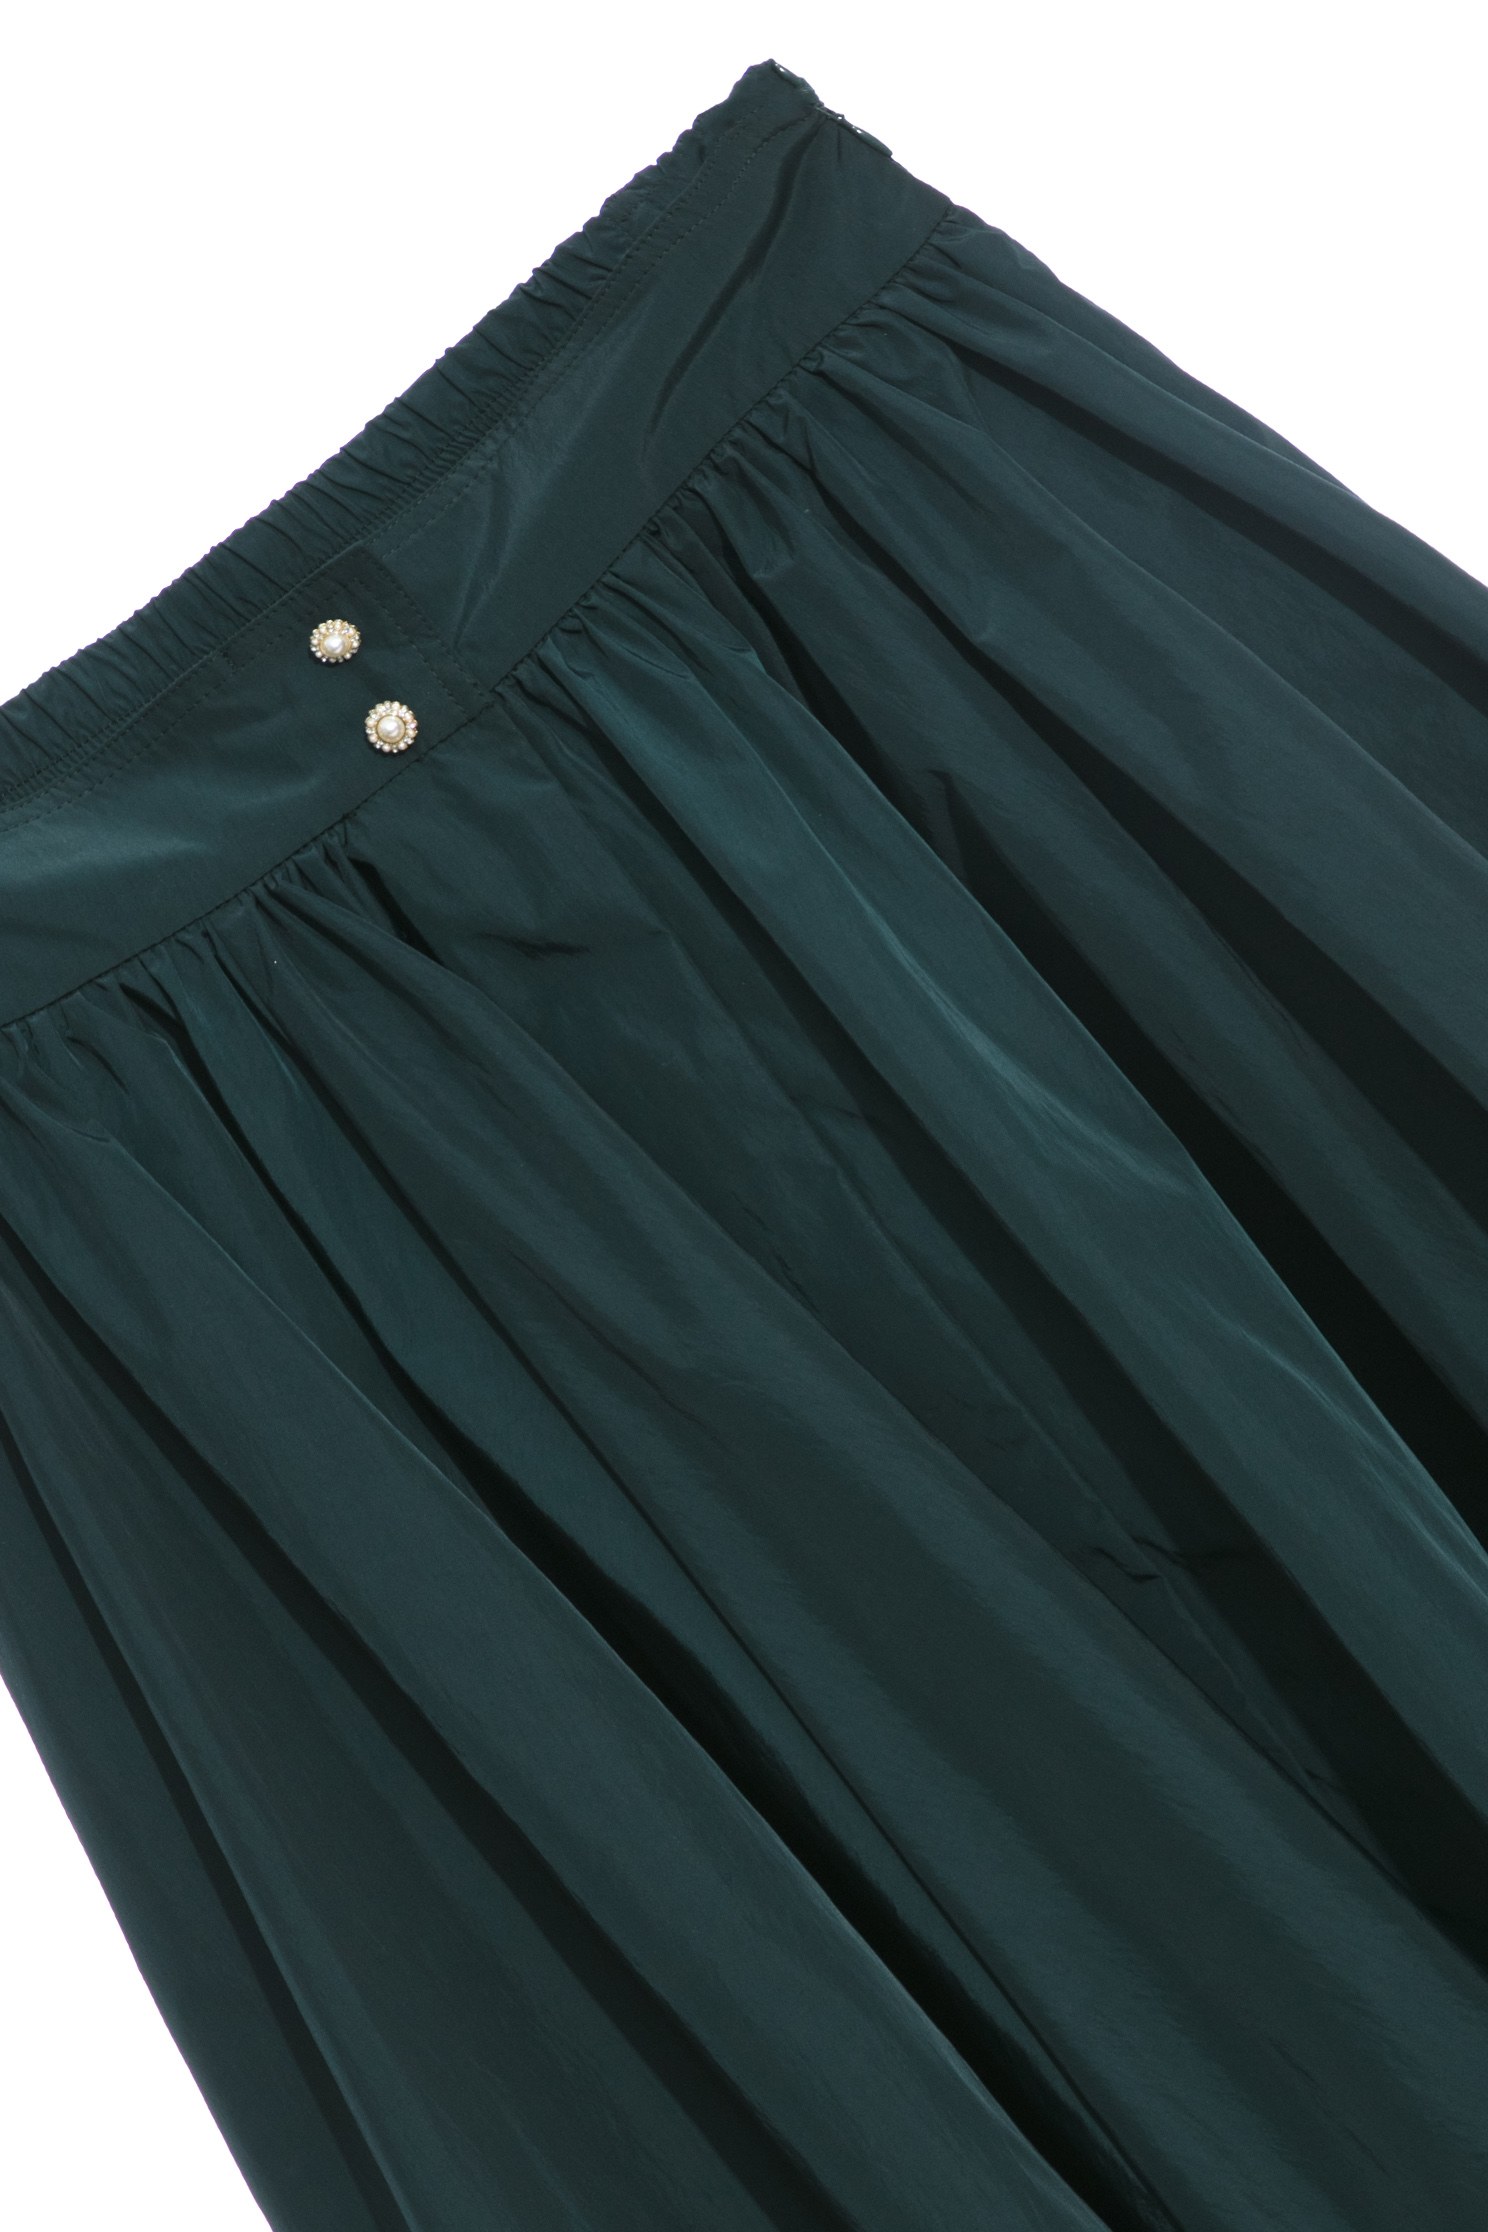 偽綢緞銅綠色大蓬裙,綠色 長裙,側邊拉鍊 長裙,中腰 長裙偽綢緞銅綠色大蓬裙,A字裙,春夏穿搭,長裙